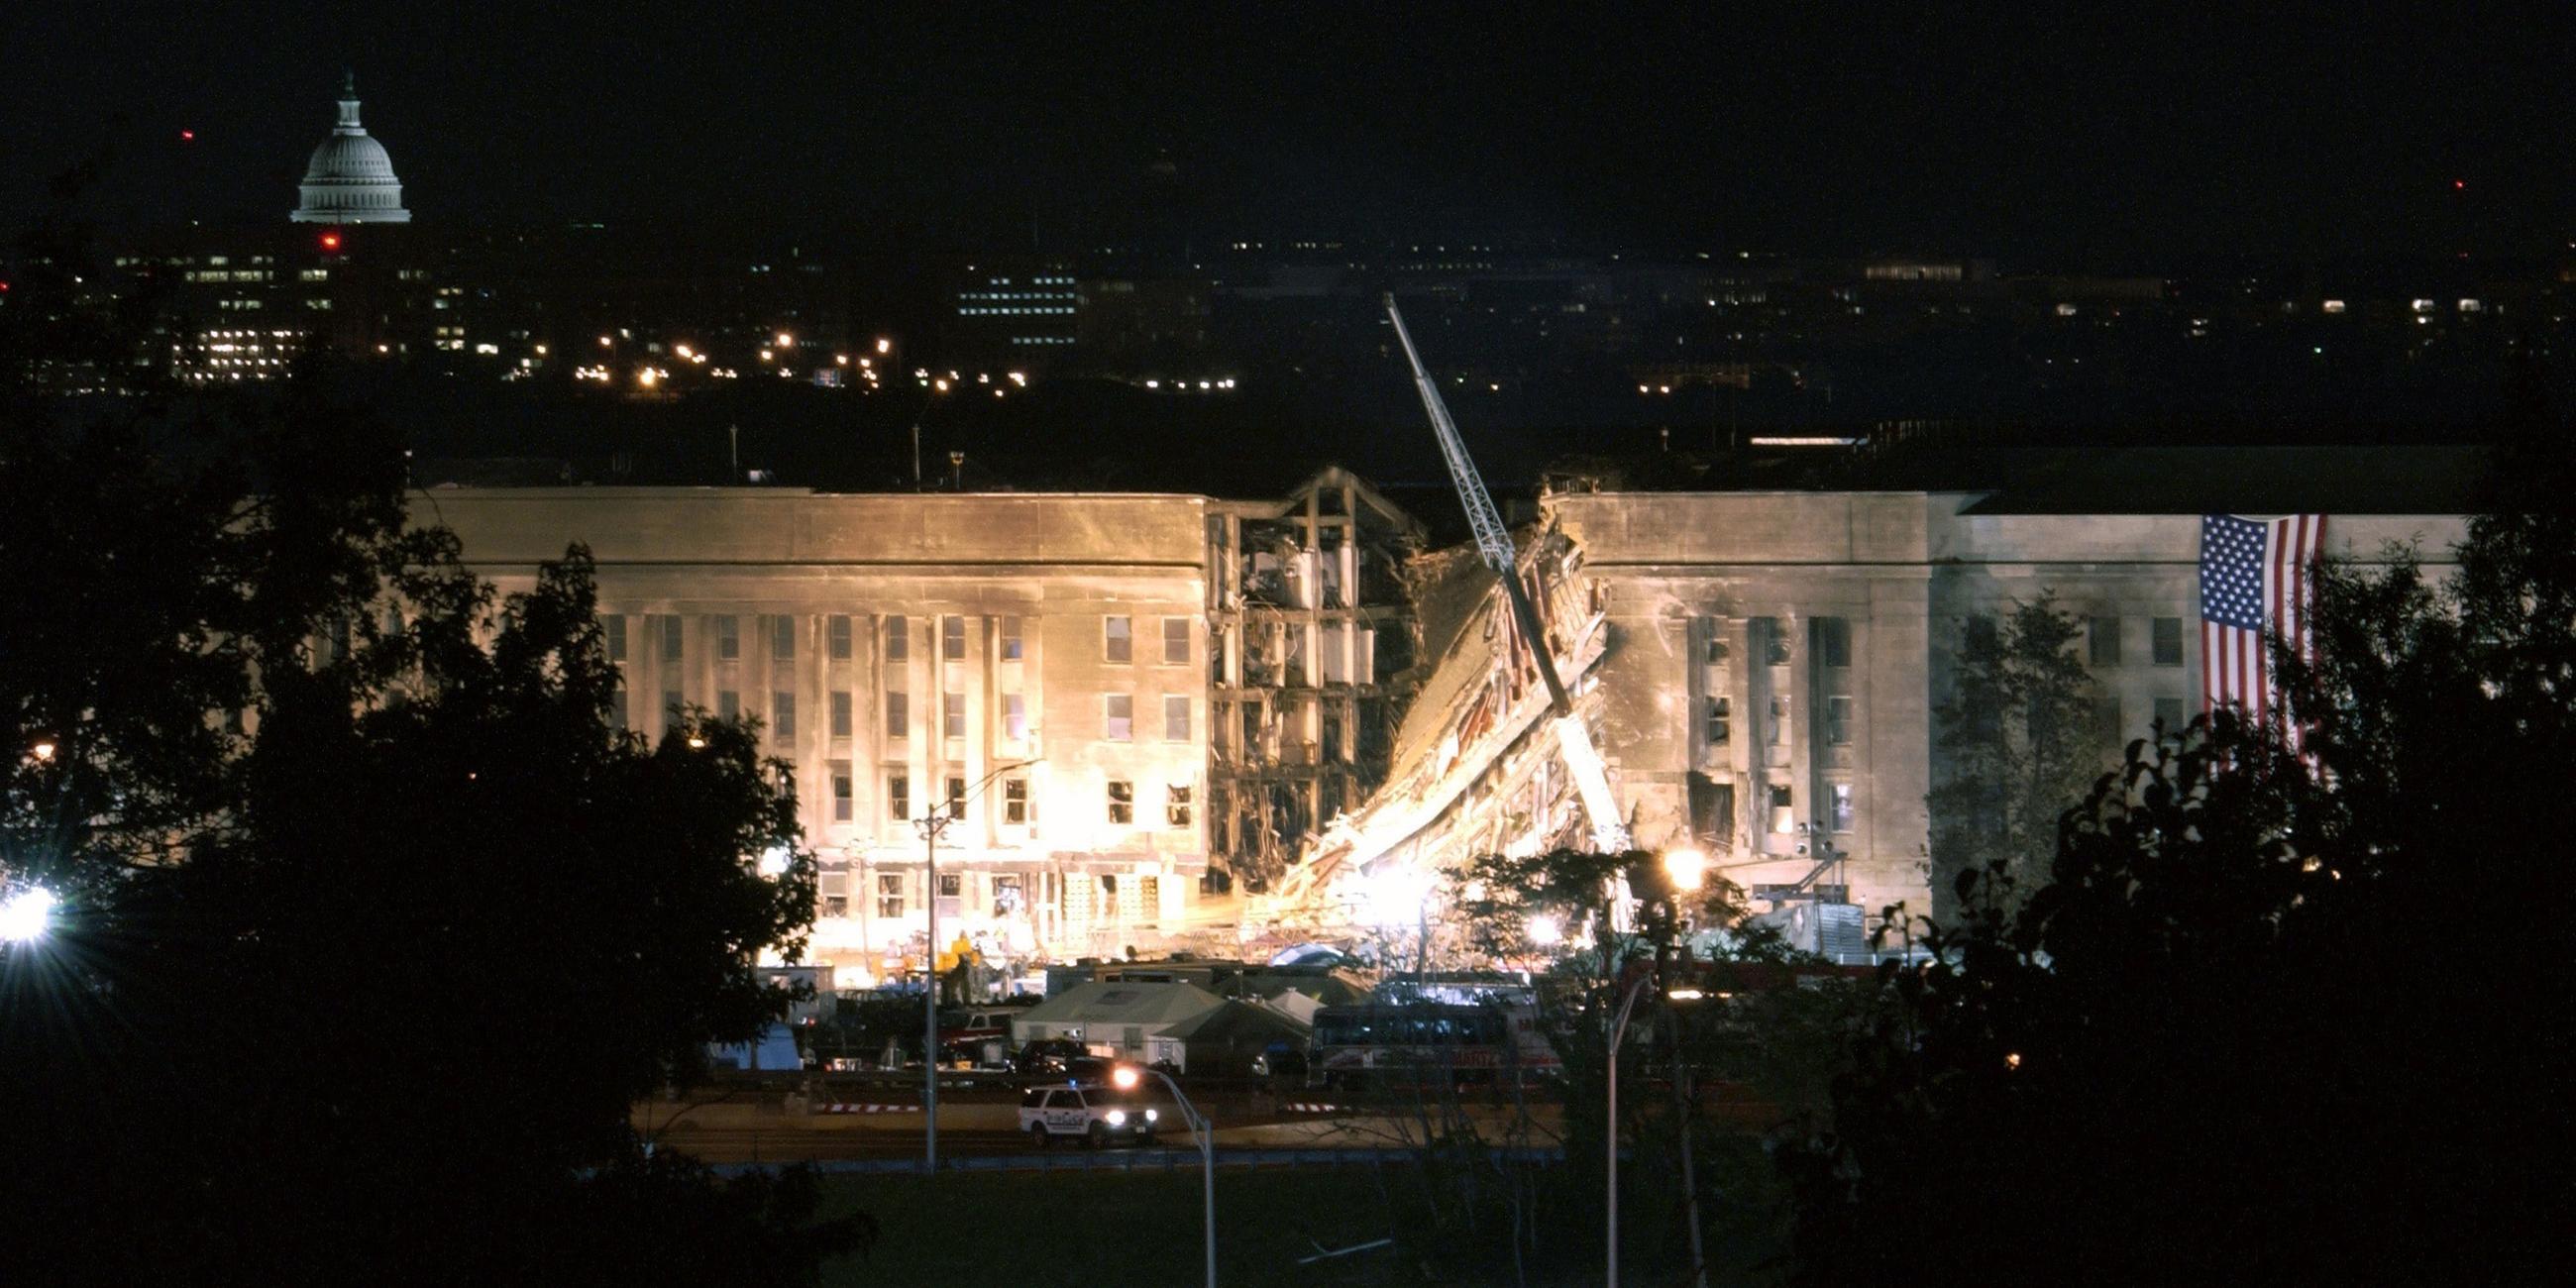 "Der Preis des Krieges: Kampf gegen den Terror": Blick auf das, durch einen Terroranschlag beschädigte, Pentagon bei Nacht. Das Gebäude wird angestrahlt. Links hängt eine US-Flagge am Gebäude.